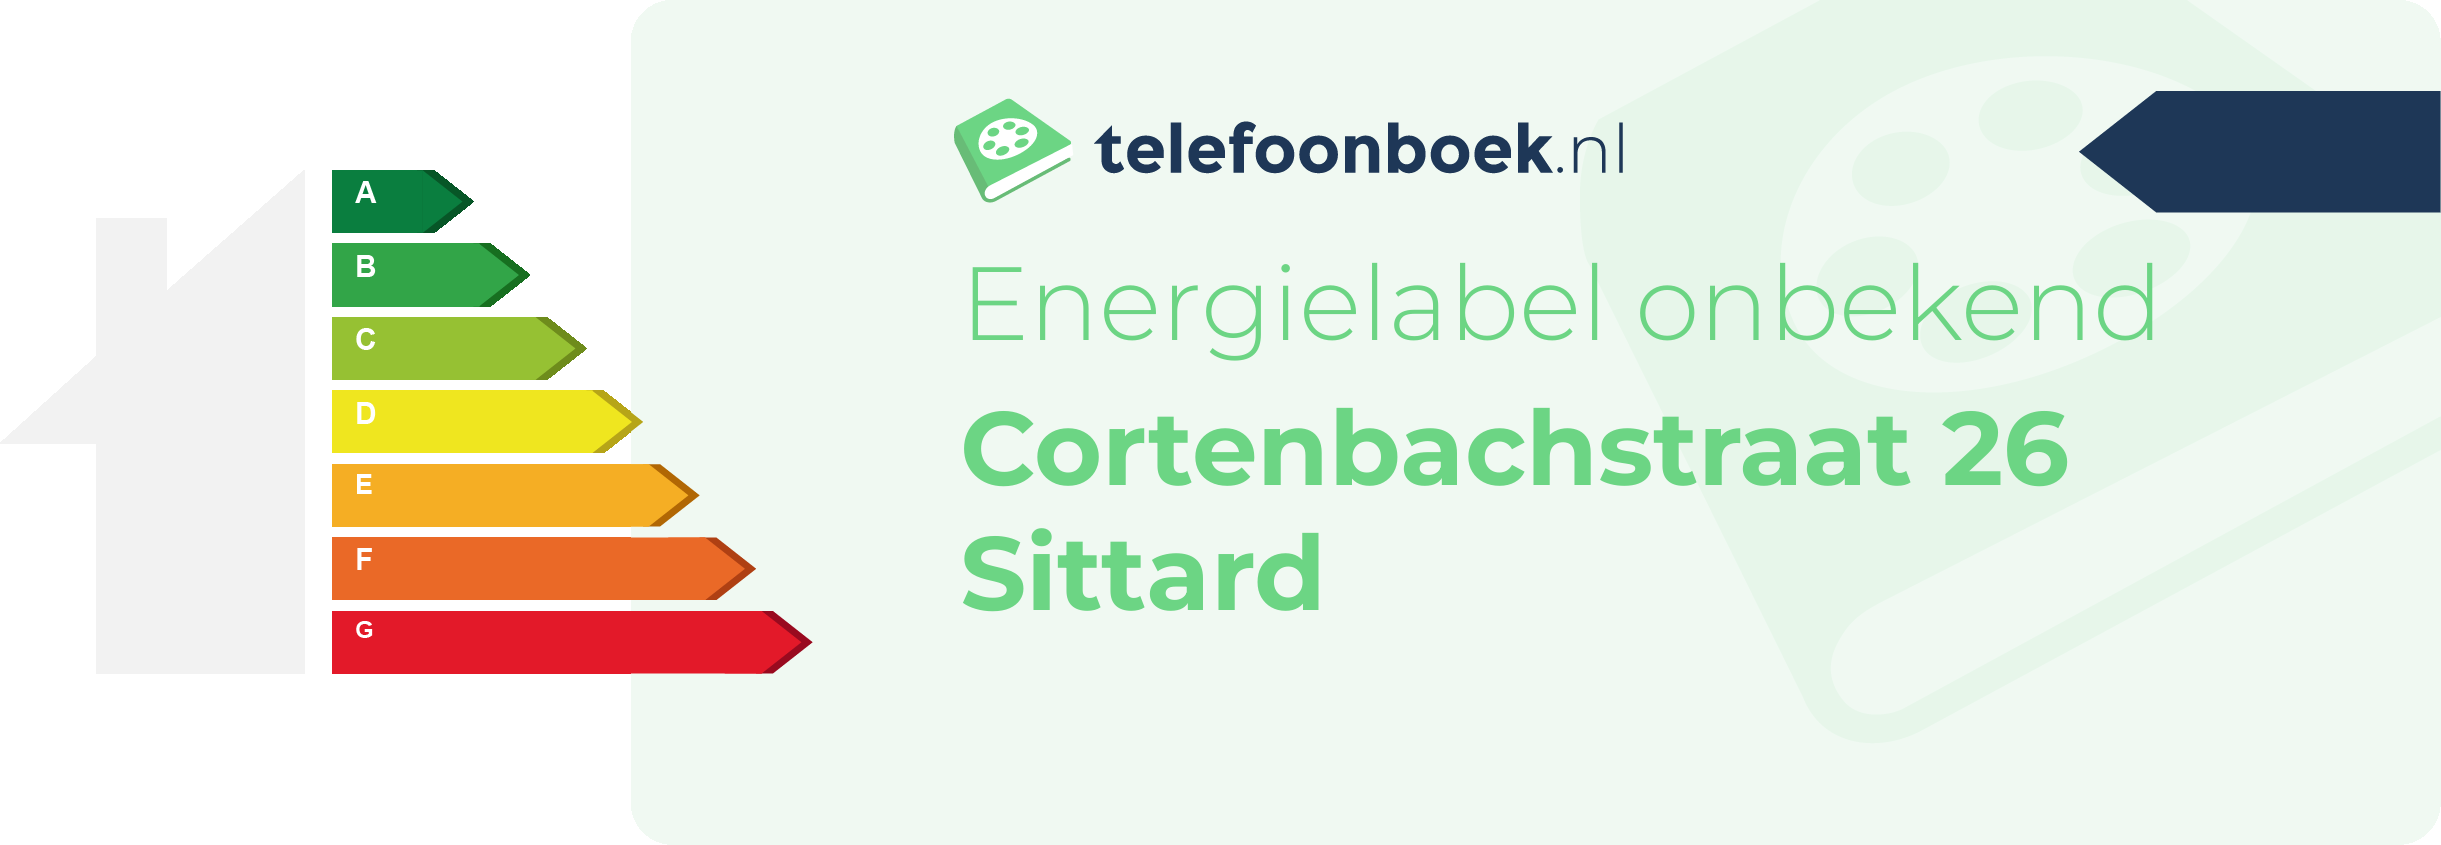 Energielabel Cortenbachstraat 26 Sittard